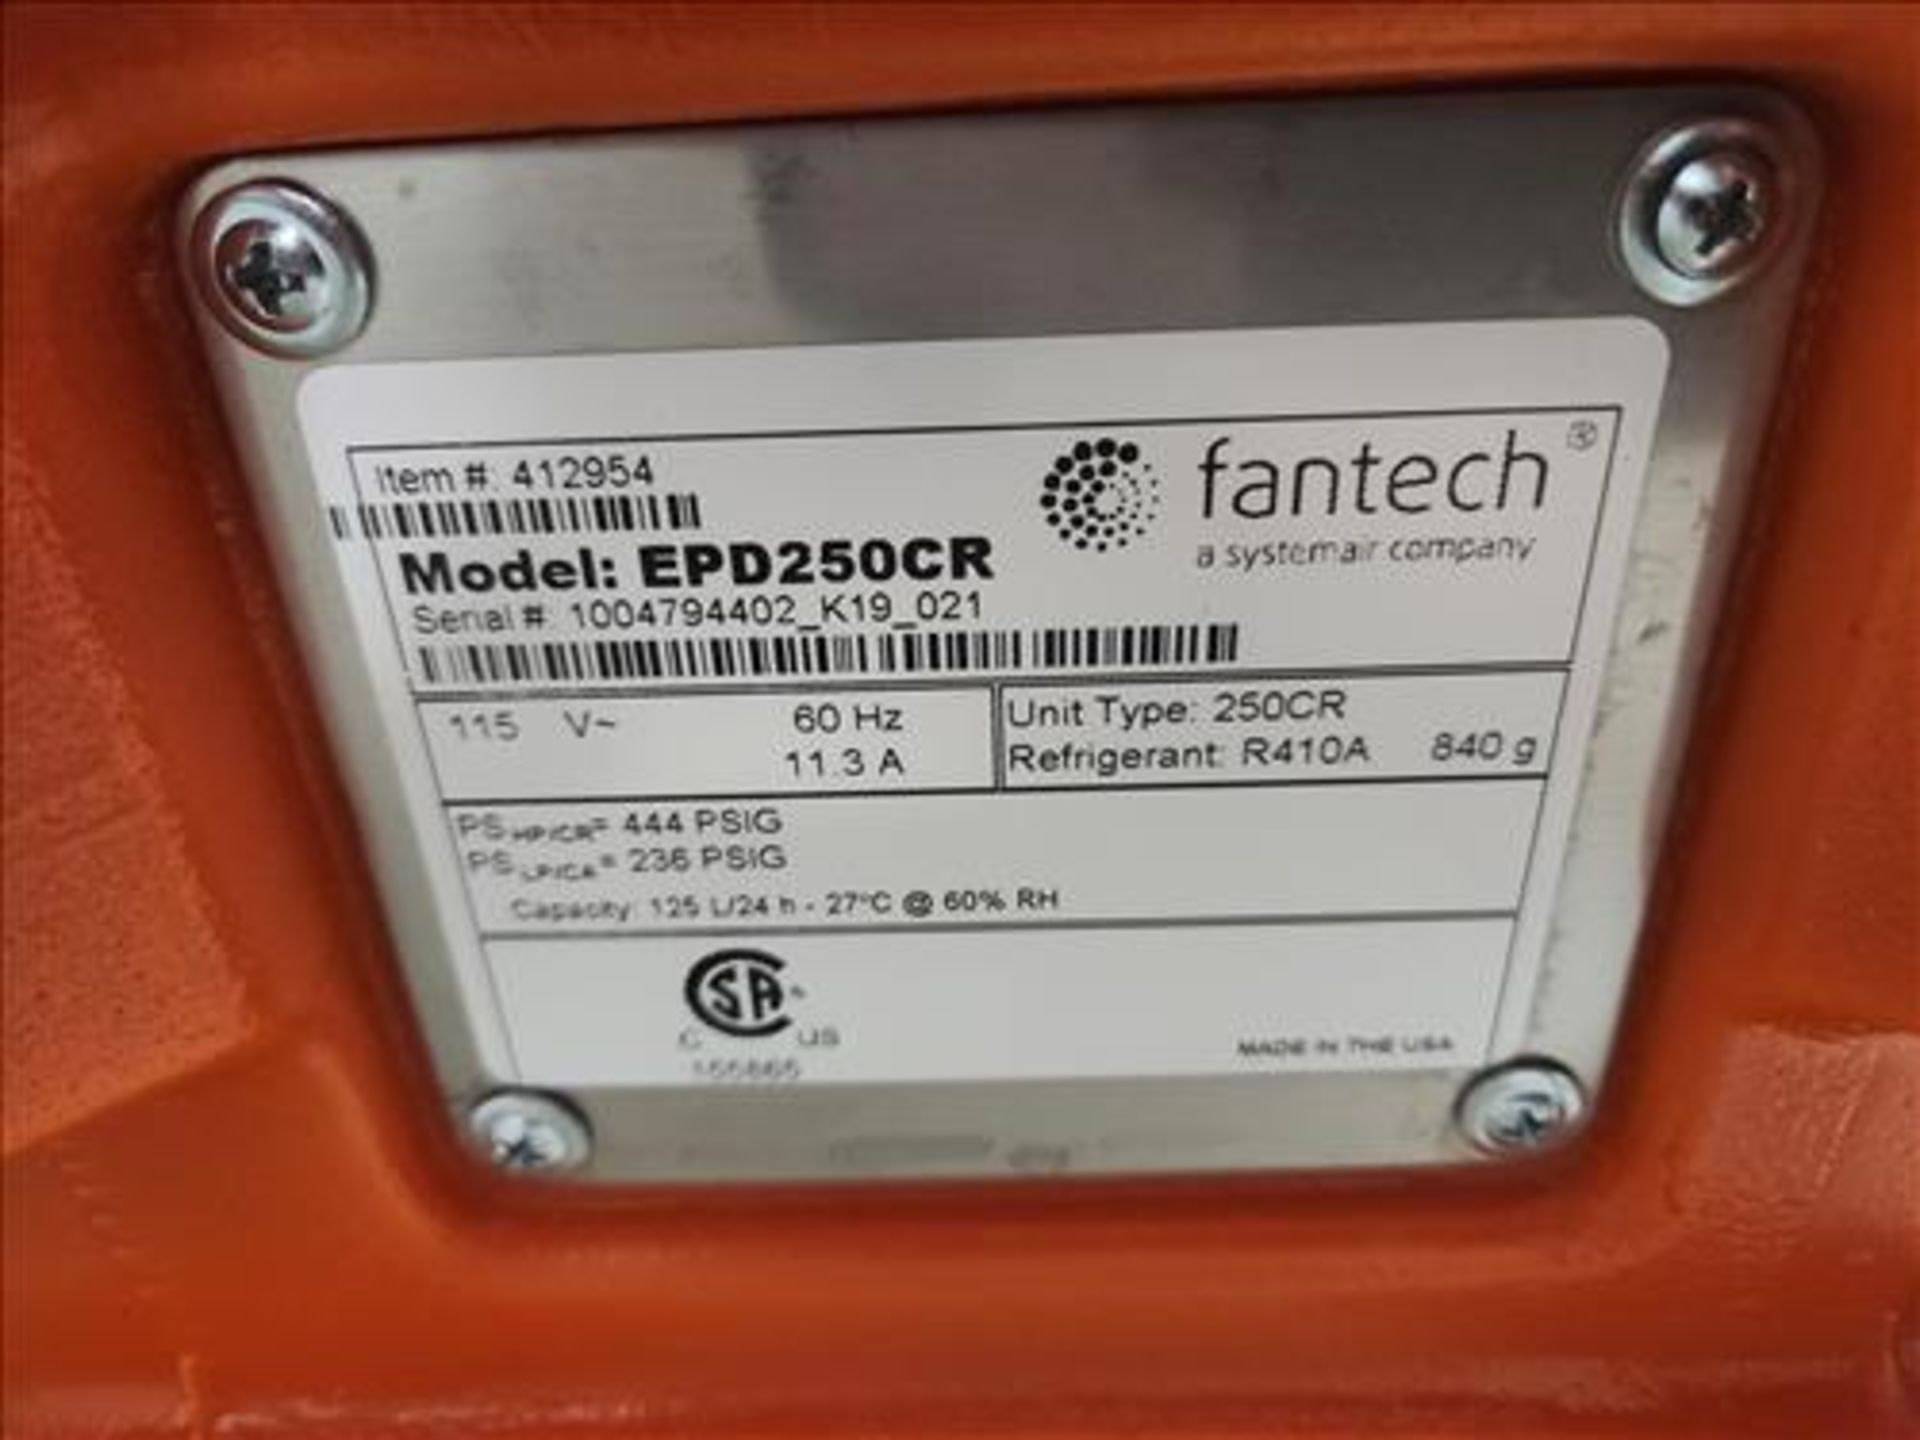 Fantech portable dehumidifier, mod. EPD250CR, s/n 1004794402_K19_021, 115 volts, 60 Hz [Loc. Main - Image 3 of 3